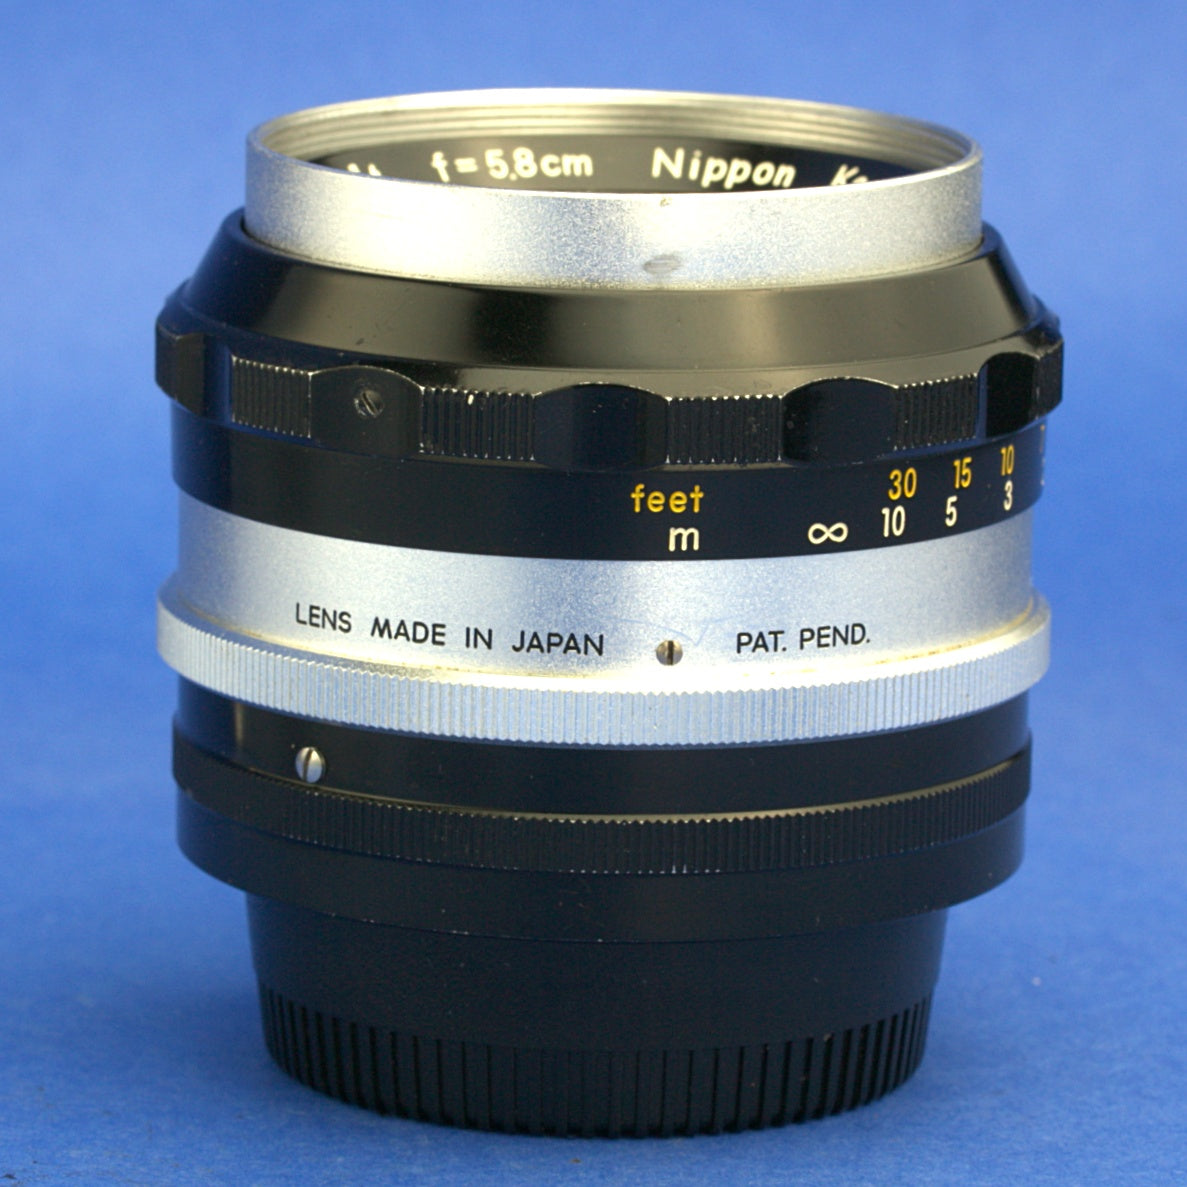 Nikon Nikkor-S 5.8cm 1.4 Lens